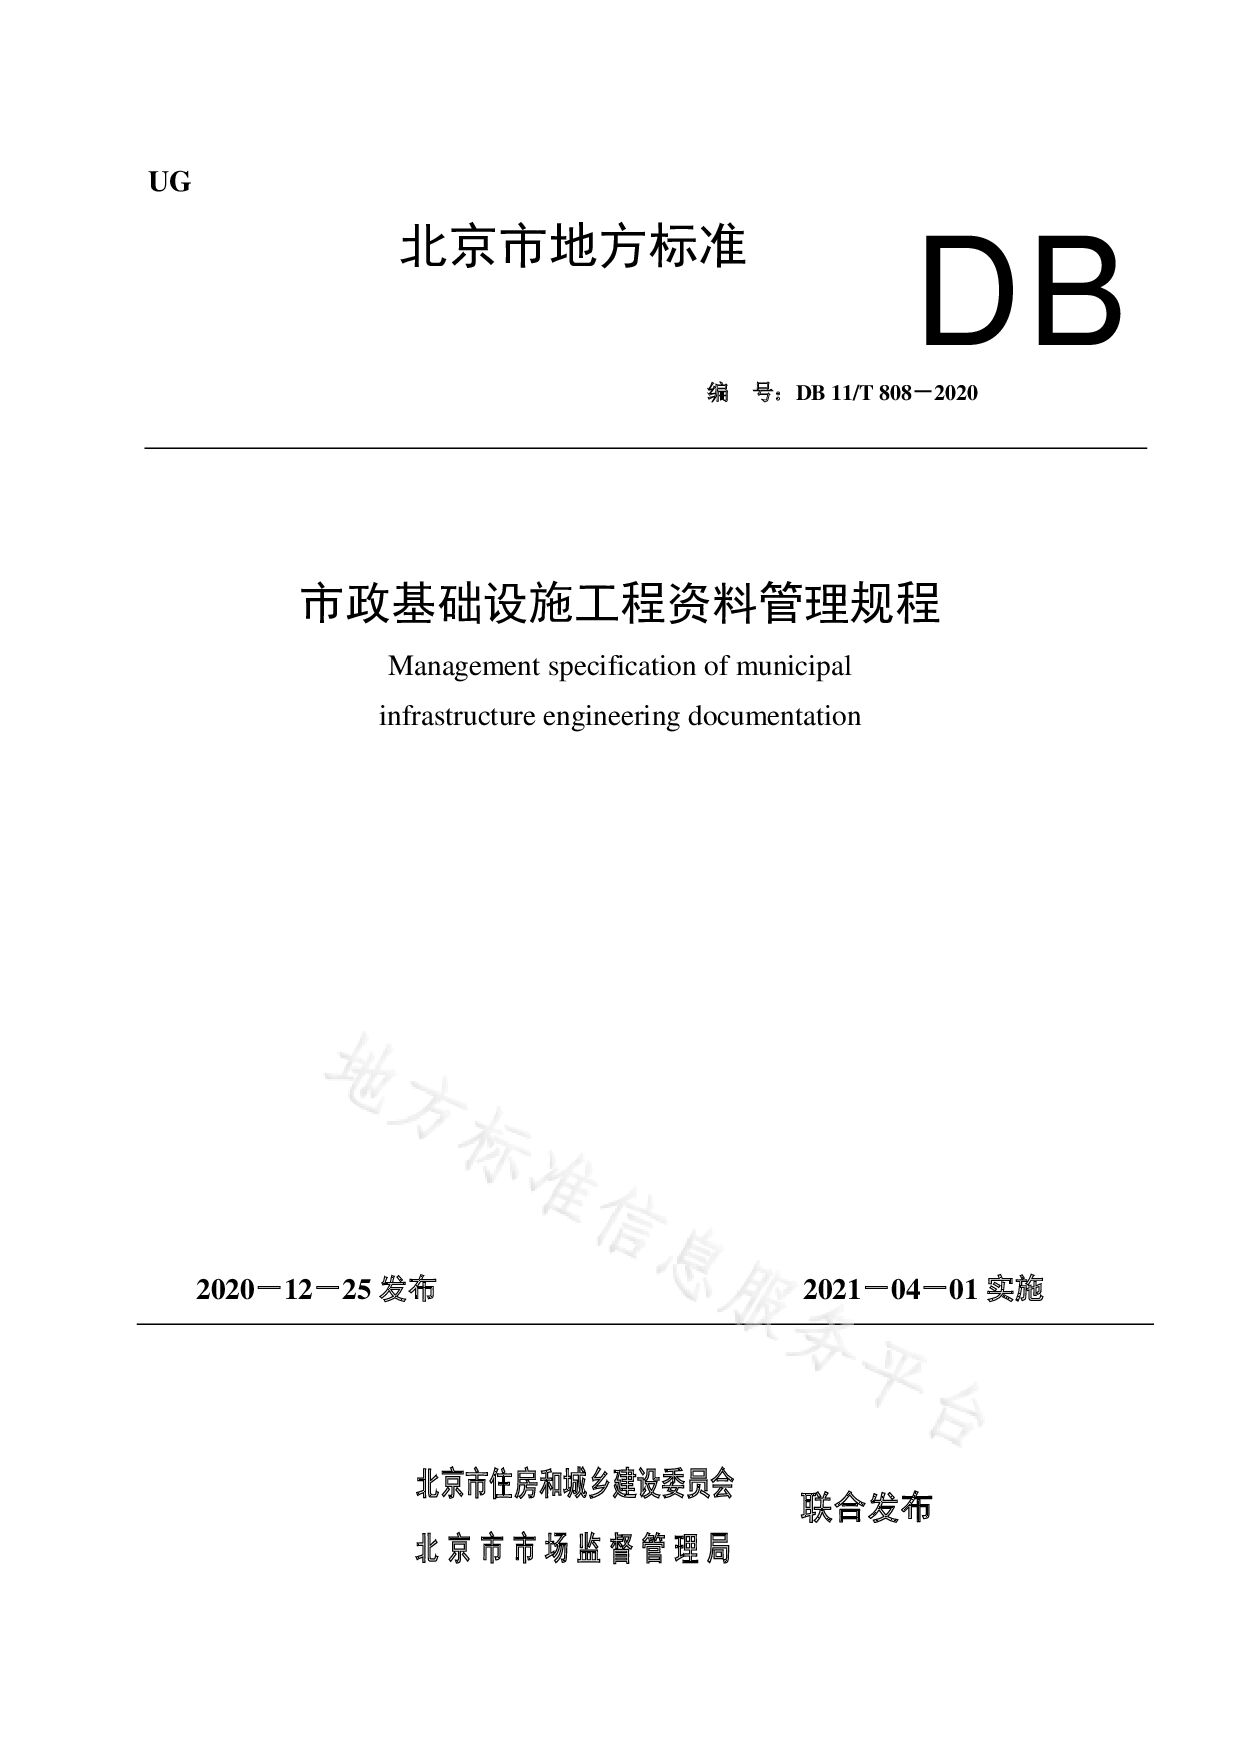 DB11/T 808-2020封面图